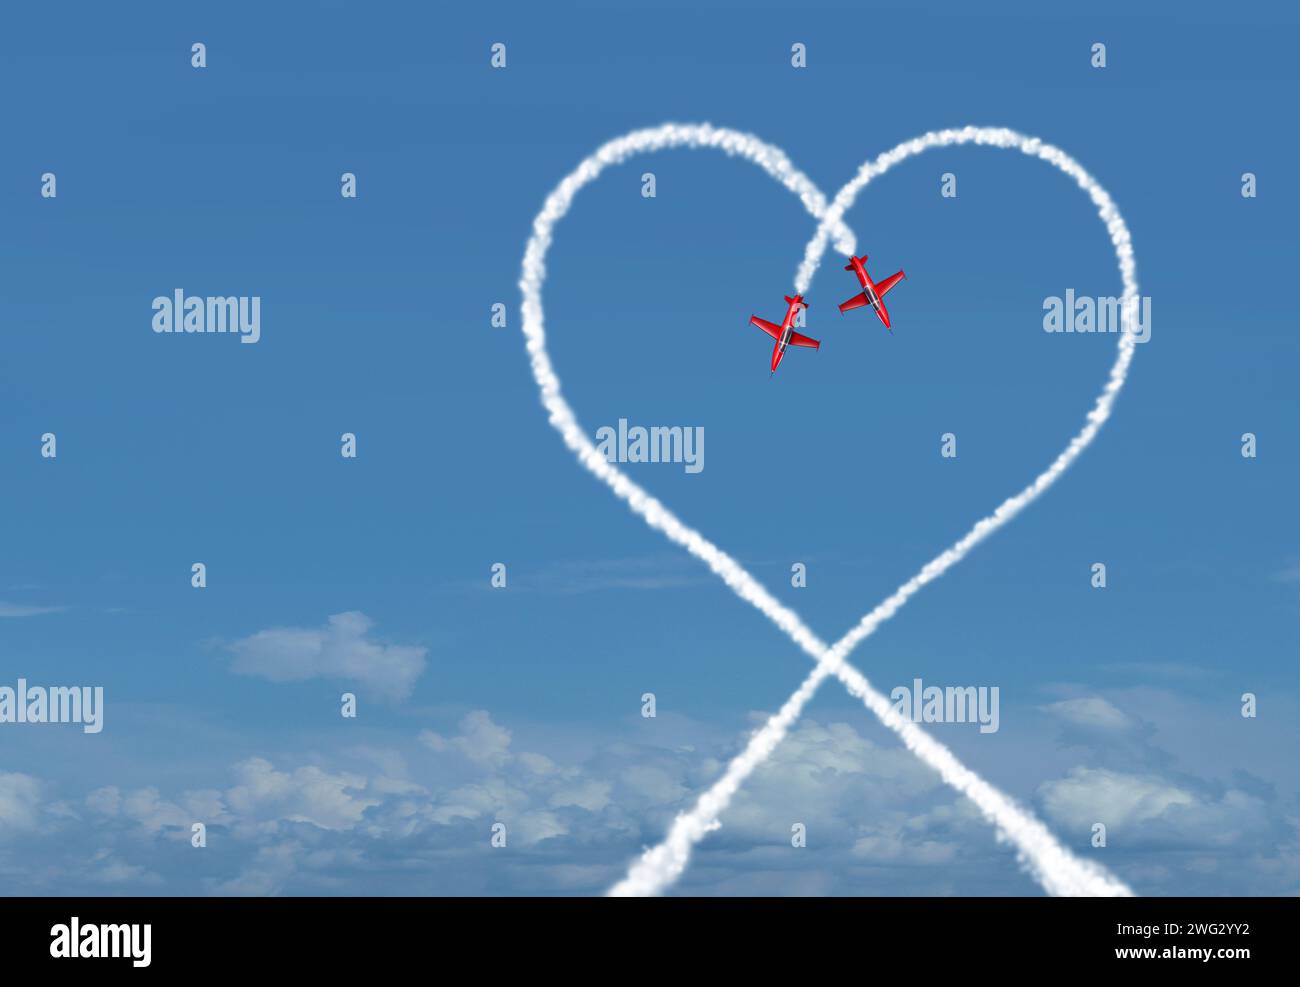 Connection of Love come simbolo di fiducia e Unione in un obiettivo comune per una relazione con aerei acrobatici a reazione come spettacolo aereo Foto Stock